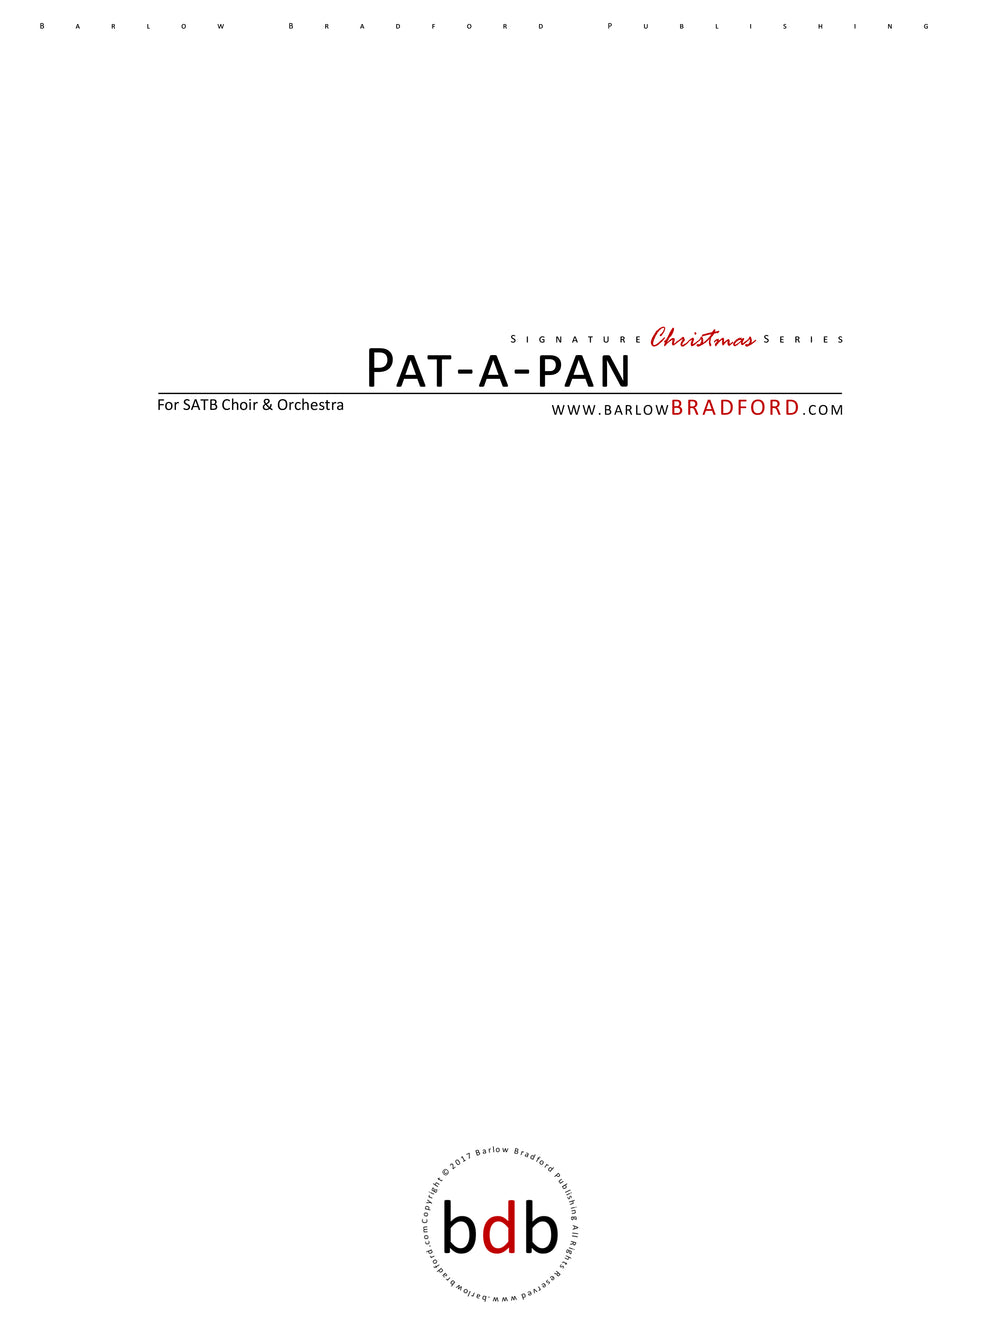 Pat-a-pan